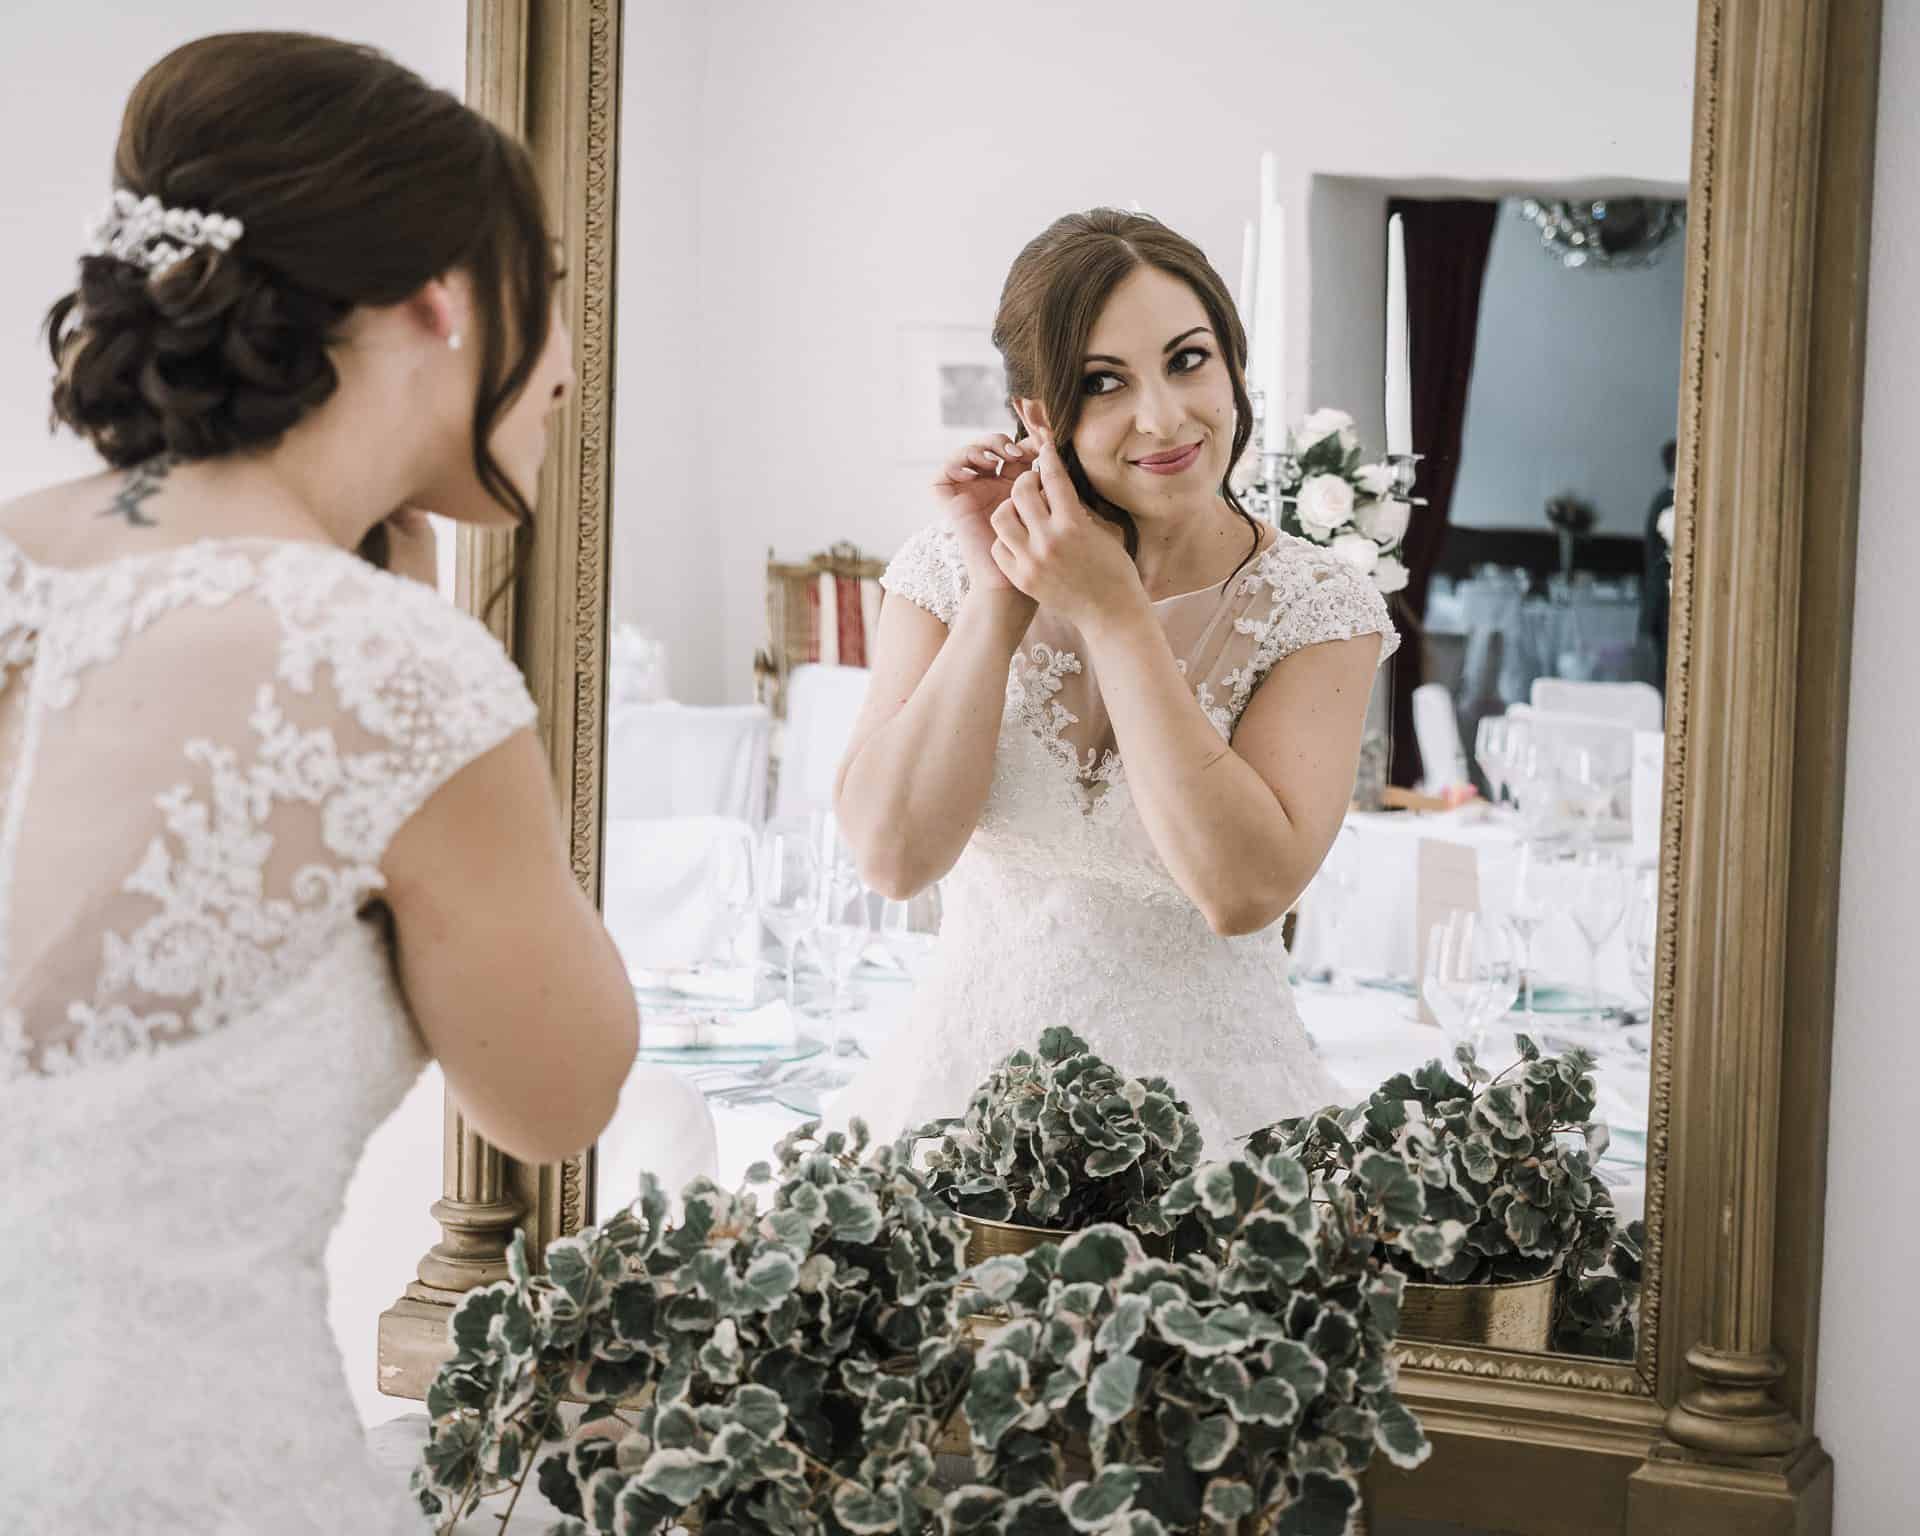 Eine Braut setzt ihren Ehering vor einem Spiegel an.